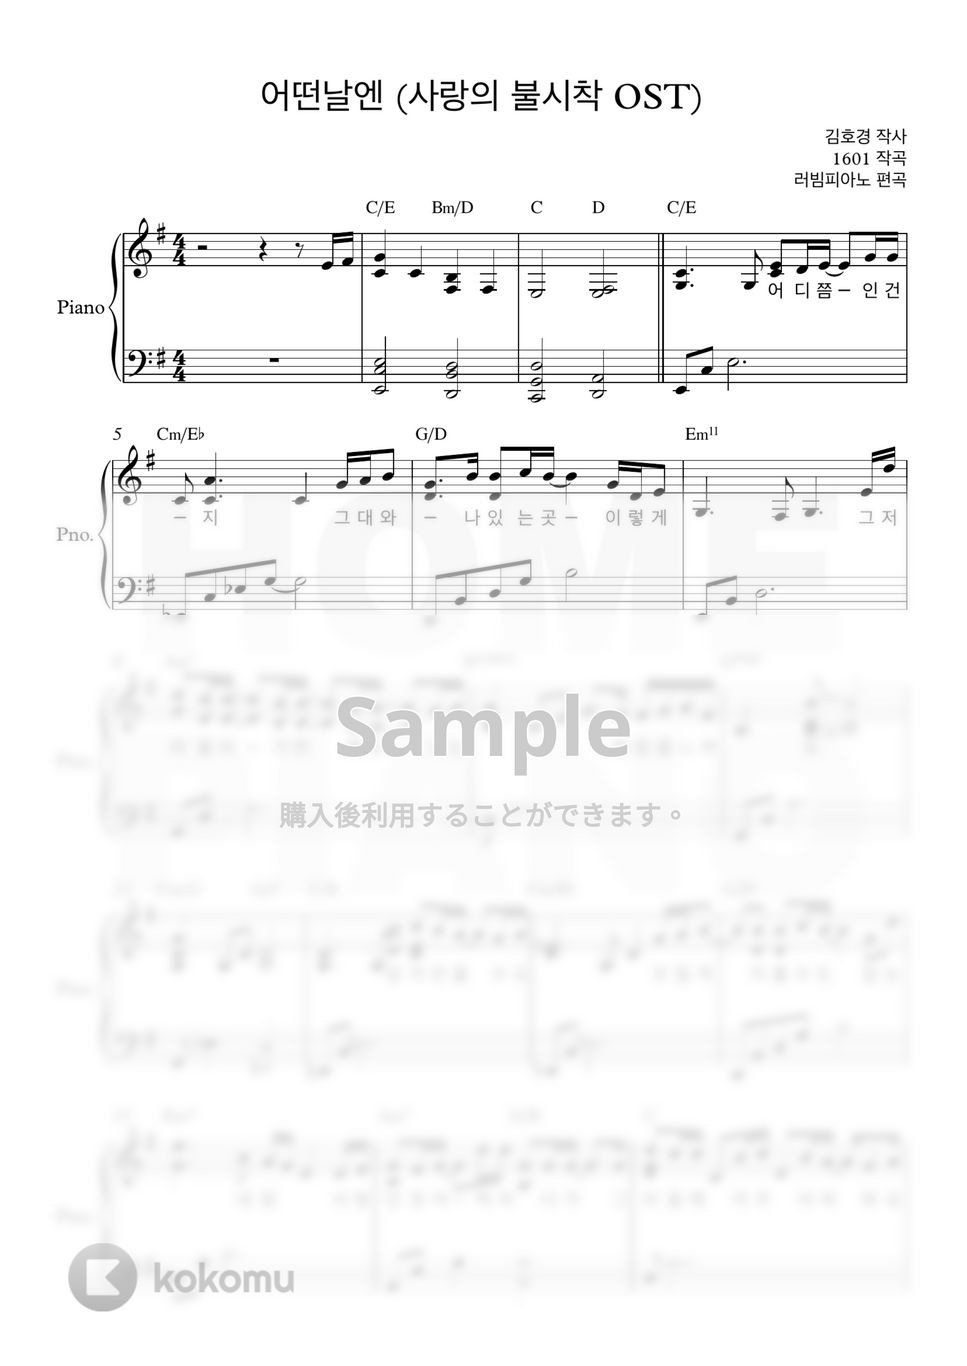 愛の不時着 OST - ある日に (上級) by HOME PIANO